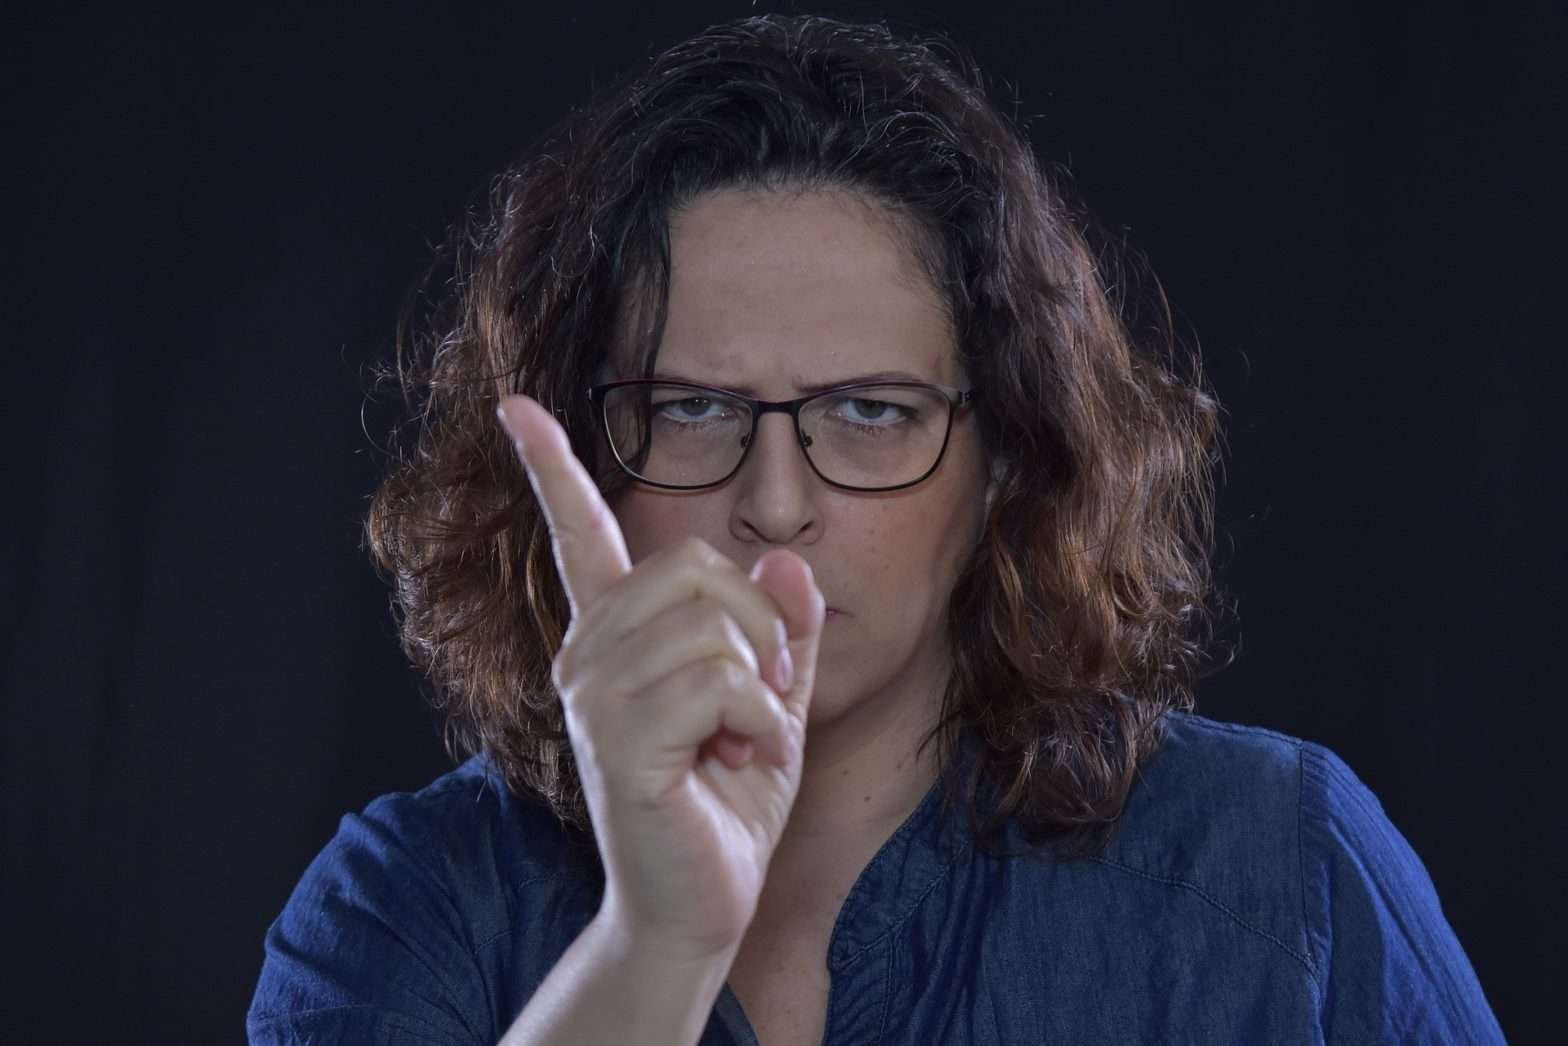 Mulher de óculos e camisa azul fazendo sinal de negativo com a mão